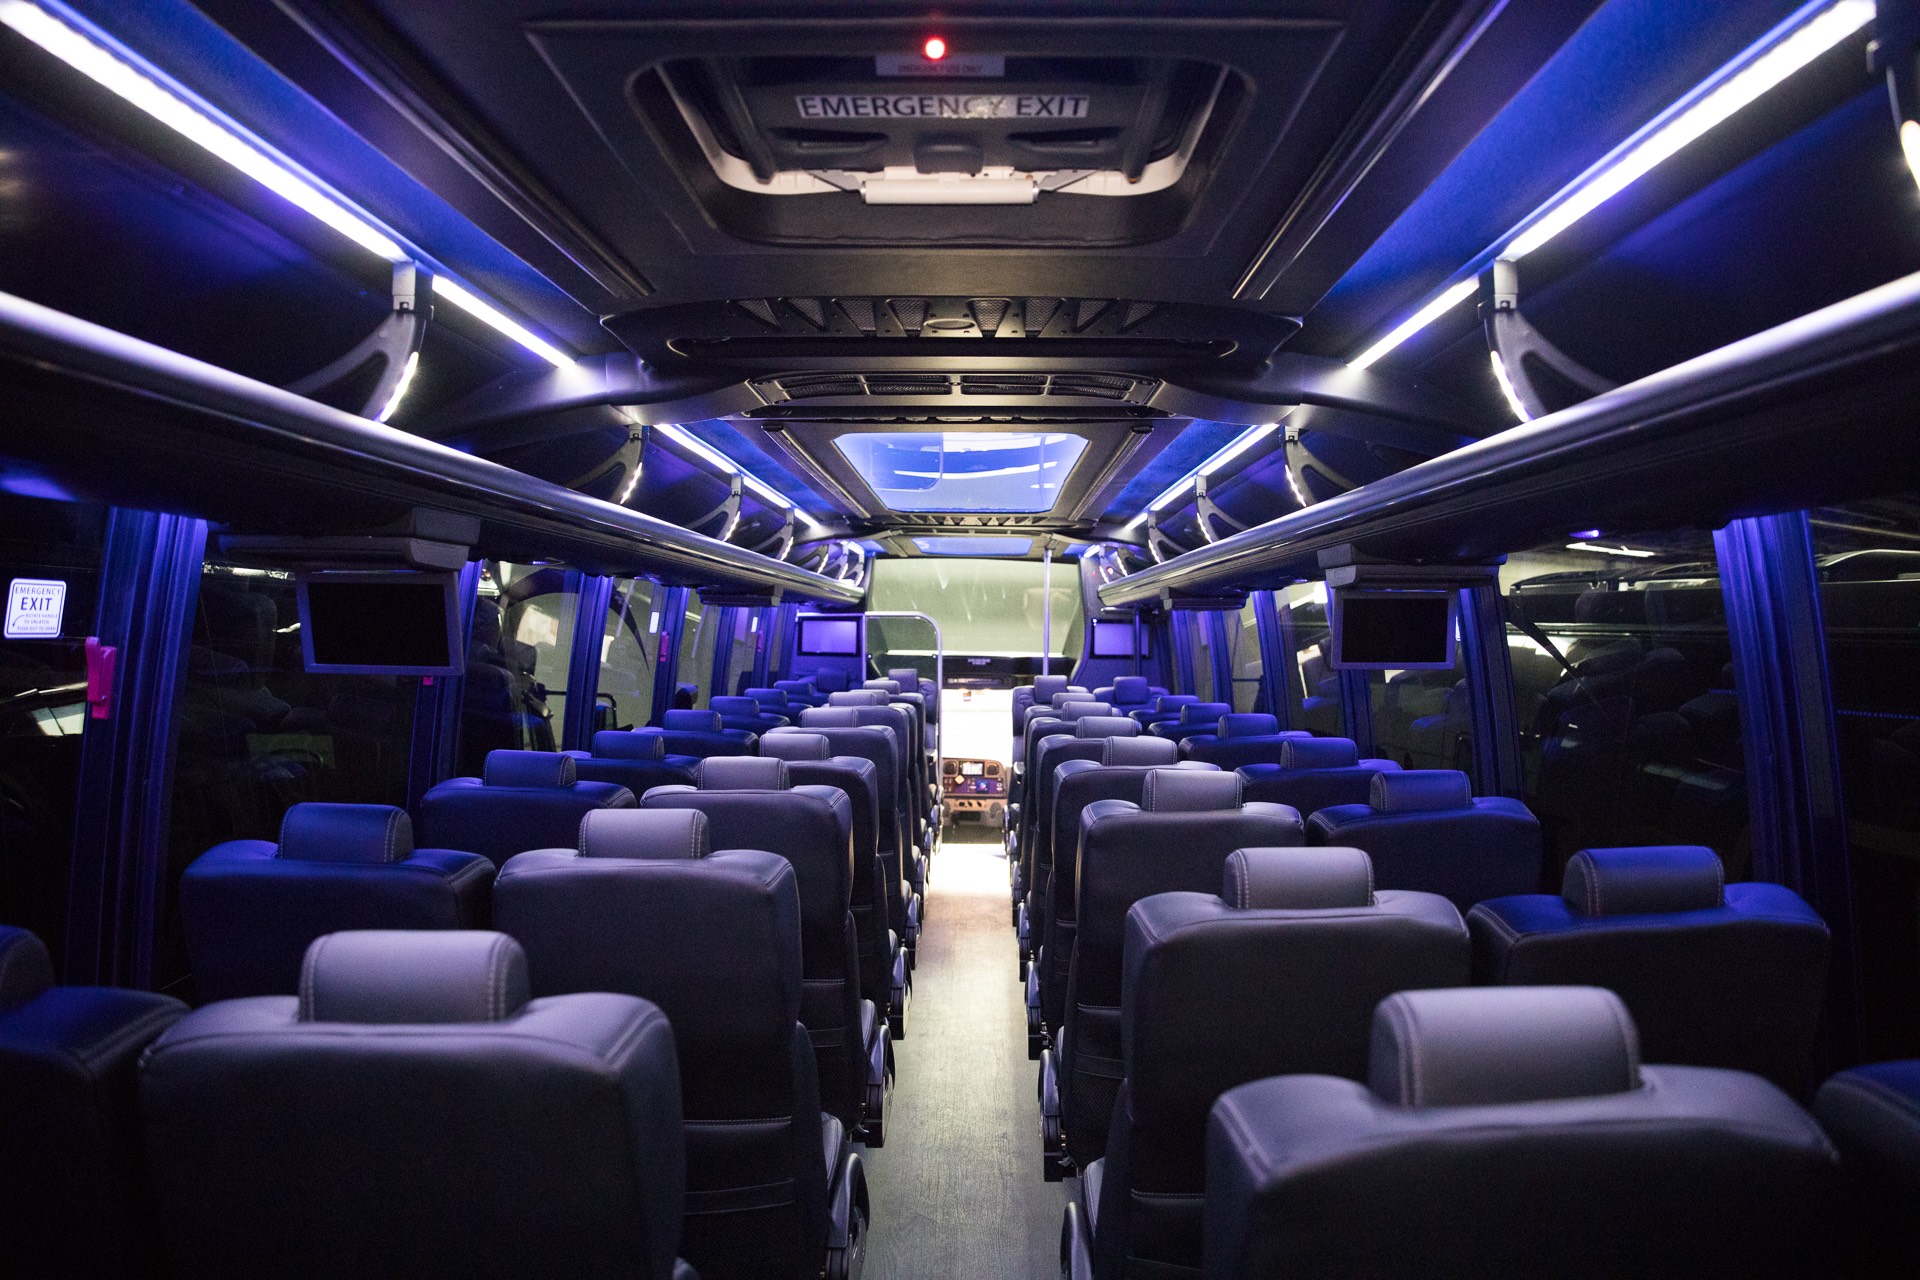 Luxury Coach Bus Interior